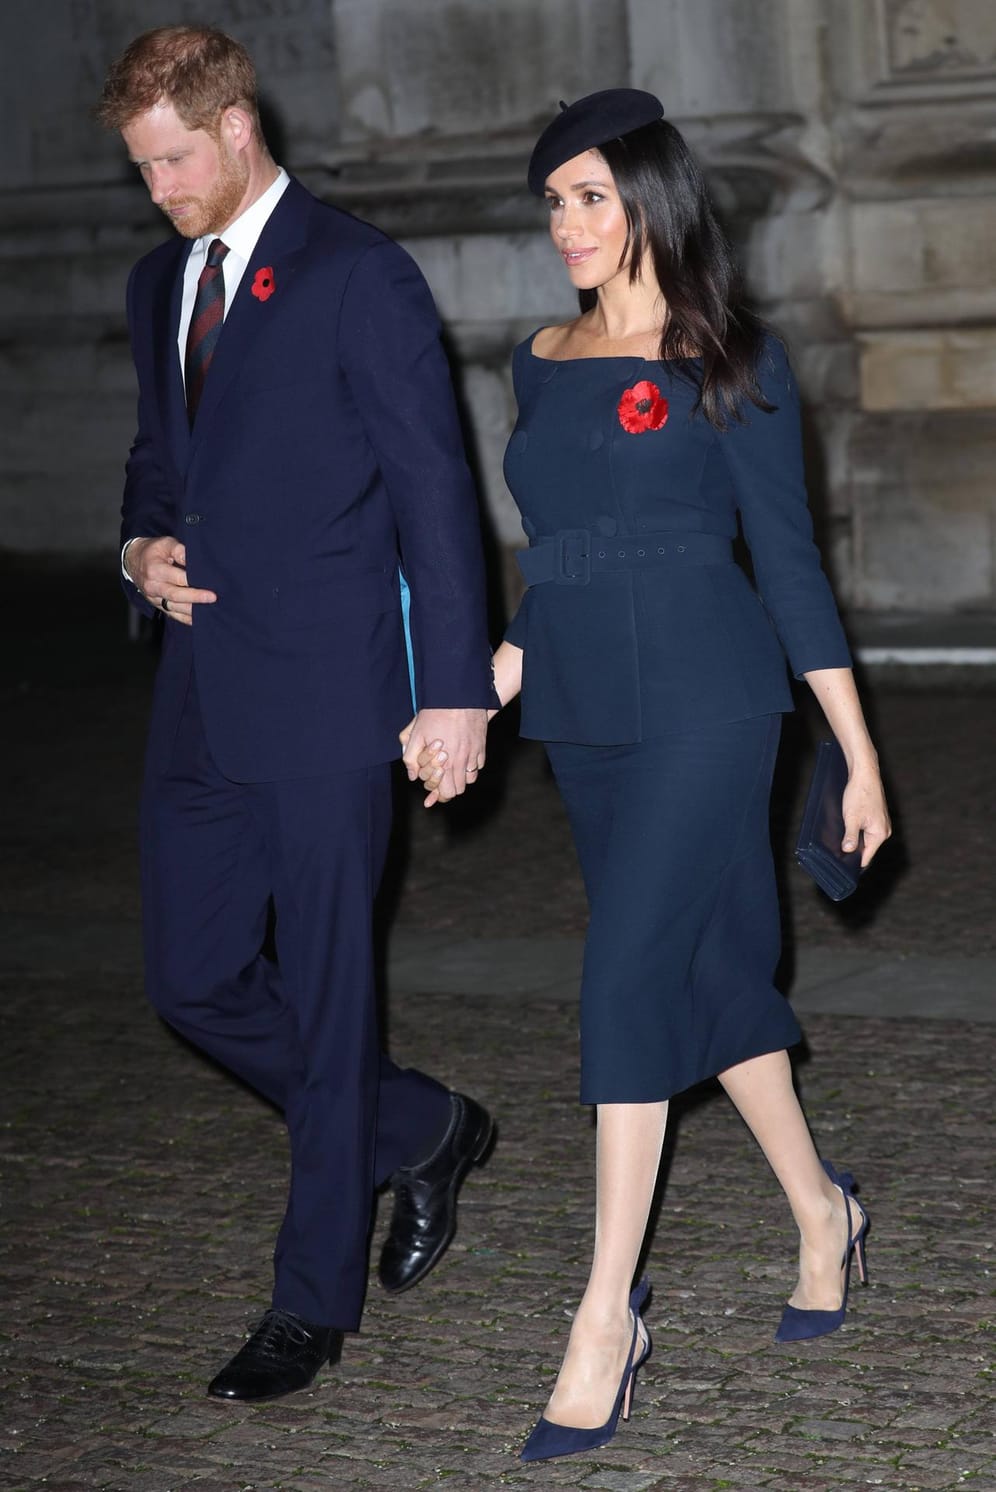 11. November 2018: Gottesdienst in der Westminster Abbey: Herzogin Meghan im dunkelblauen Zweiteiler an der Seite von Prinz Harry. Ihre Taille hat sie durch einen Gürtel betont.